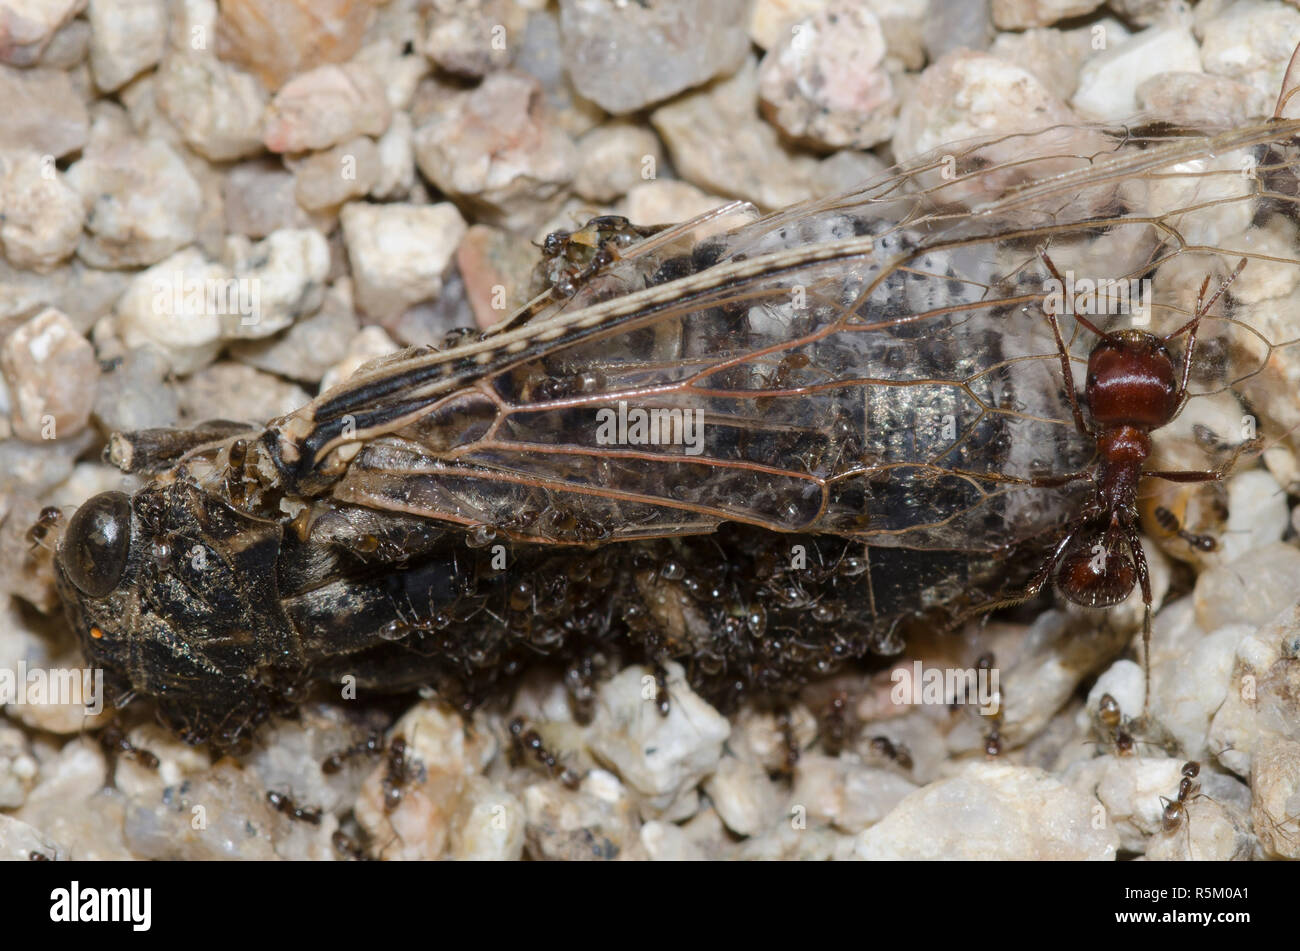 Hormigas Forelius Oderous pruinosus, con hormigas rojas cosechadoras intrusas, Pogonomyrmex barbatus, sobre la chicharra, subfamilia Tettigadinae muerto Foto de stock